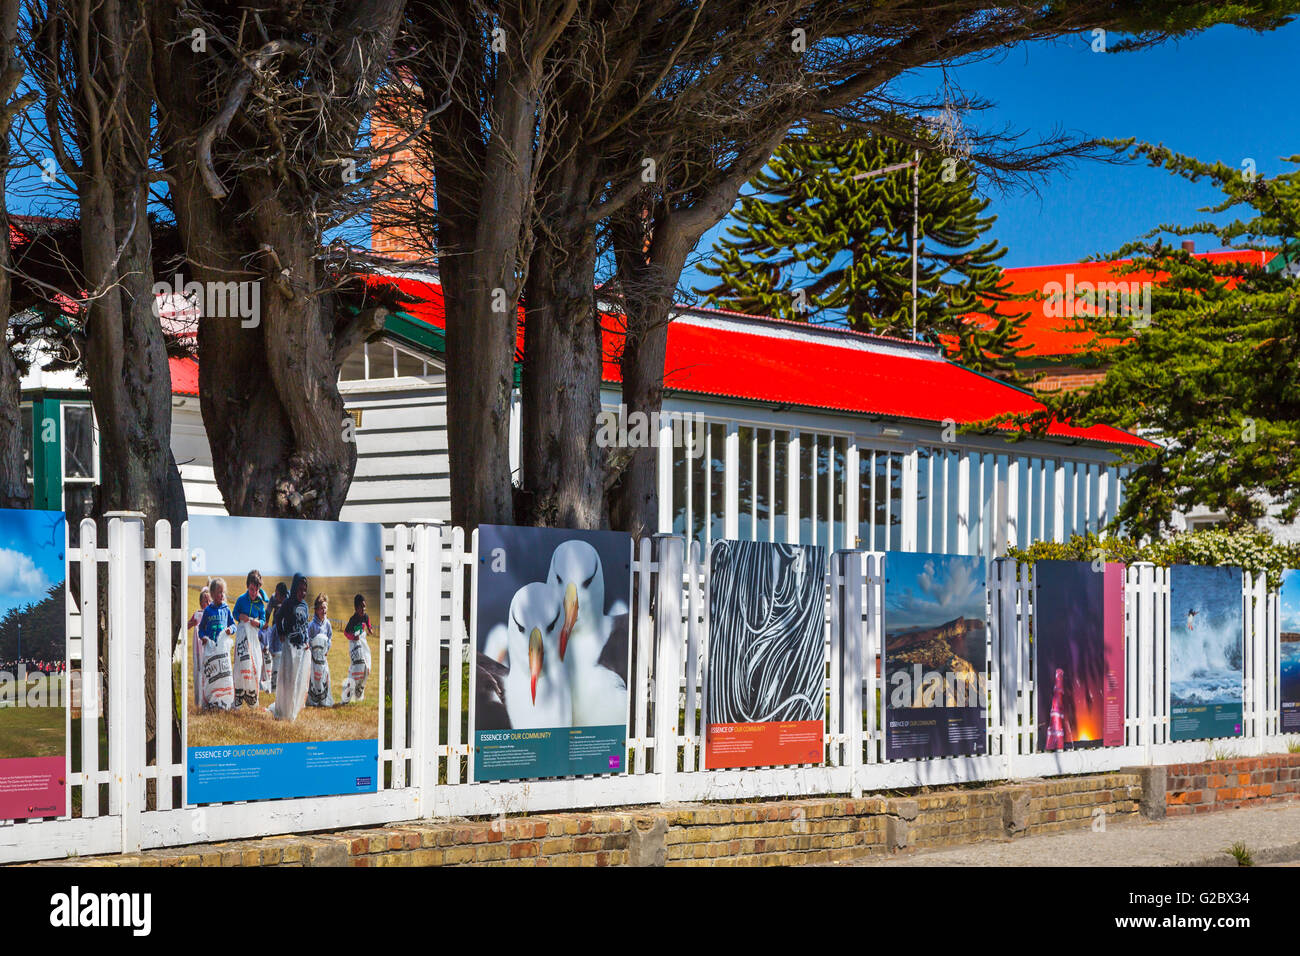 Kunstwerke von lokalen Sehenswürdigkeiten, die auf den Straßen von East Falkland, Stanley, Falkland-Inseln, British Overseas Territory angezeigt. Stockfoto